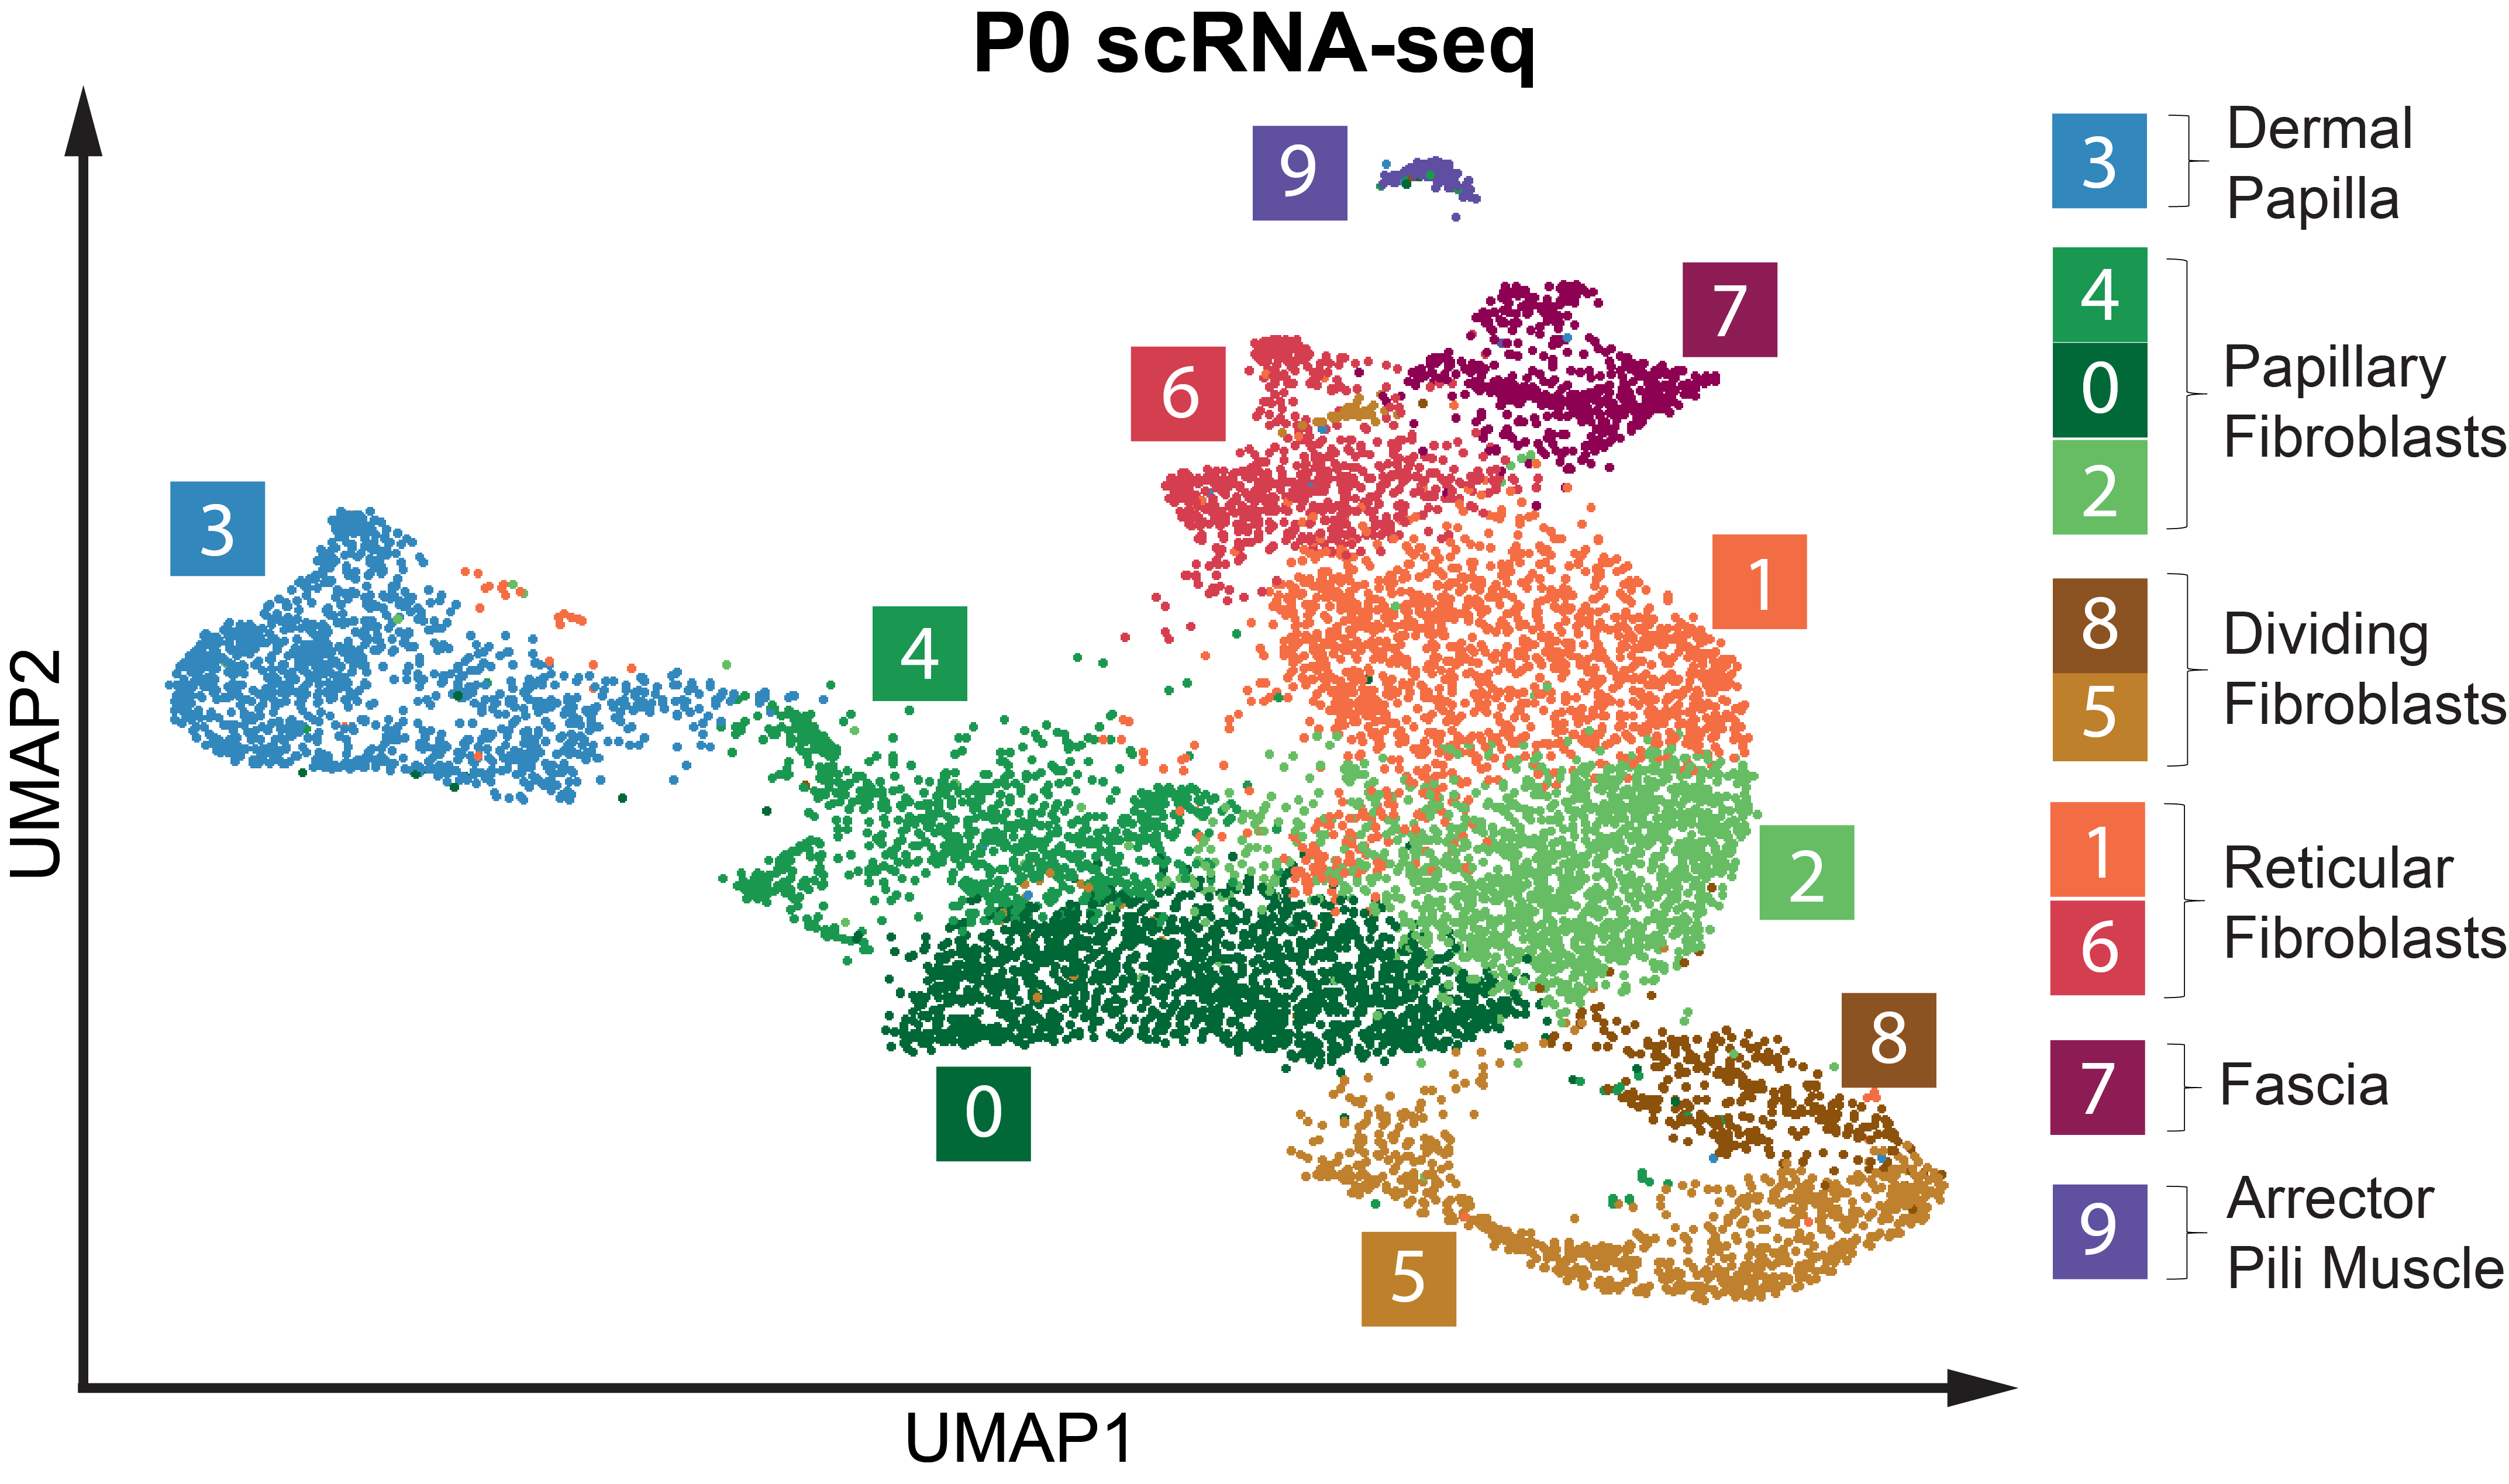 P0 sRNA-seq celltype UMAP